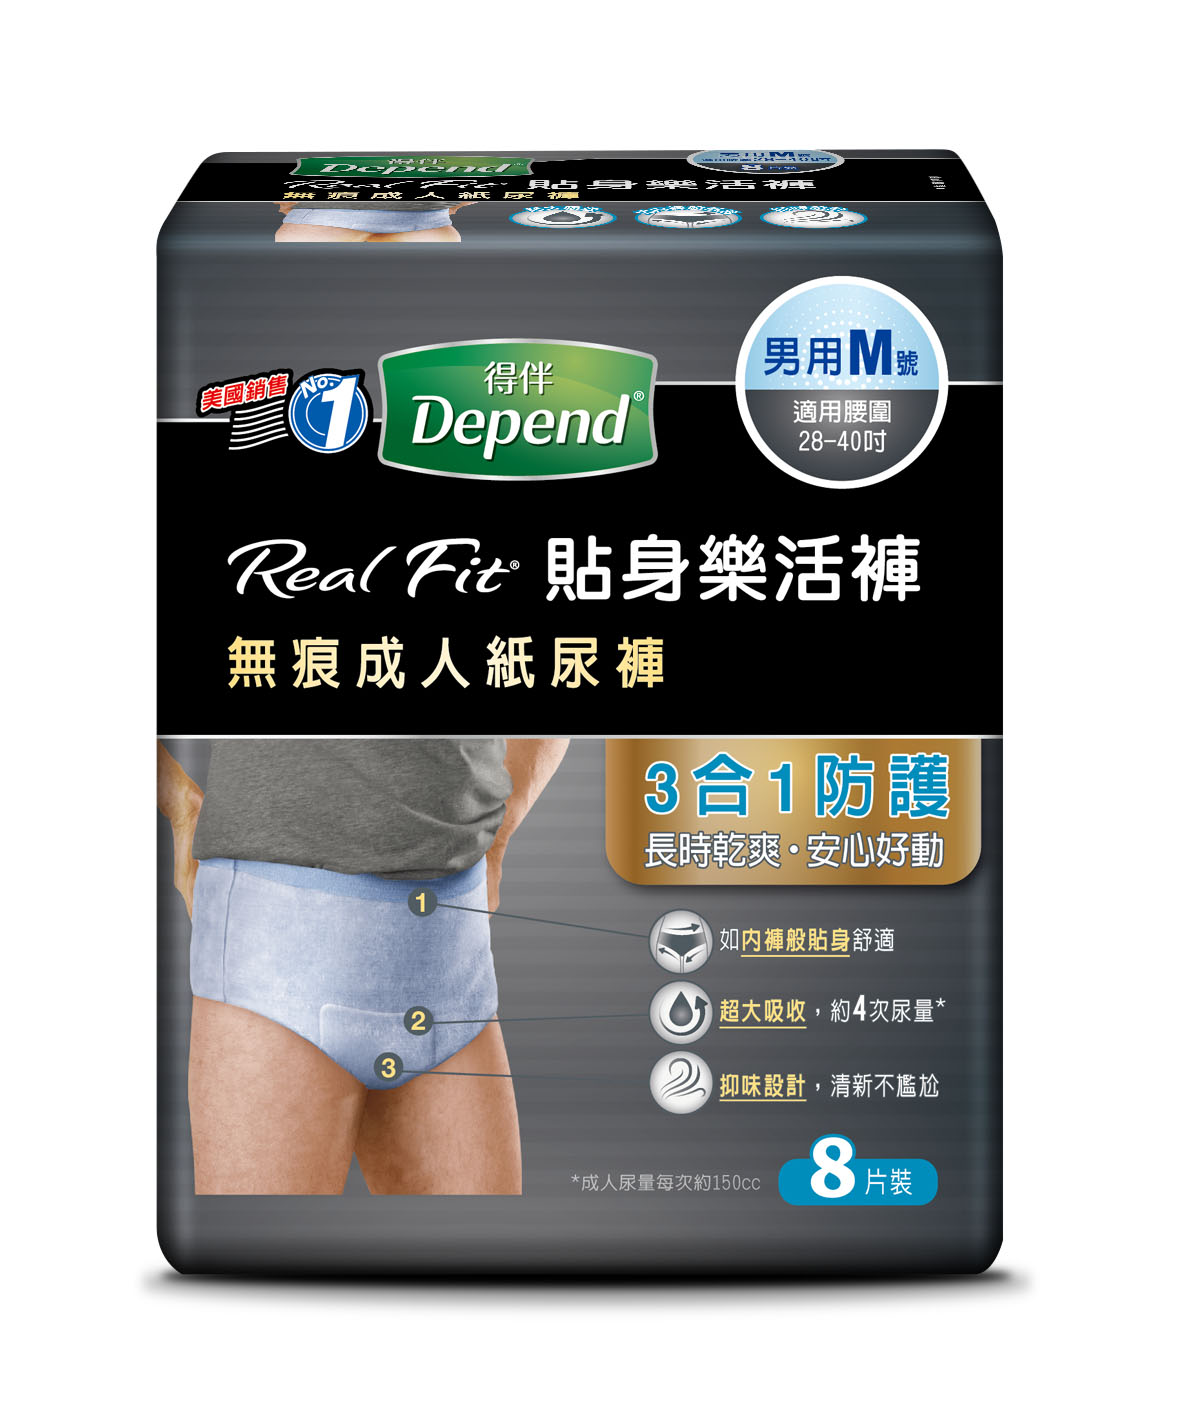 得伴Depend RealFit貼身樂活褲無痕成人紙尿褲3合1防護，長時乾爽，安心好動。如內褲般貼身舒適，超大吸收約四次尿量，抑味設計清新不尷尬